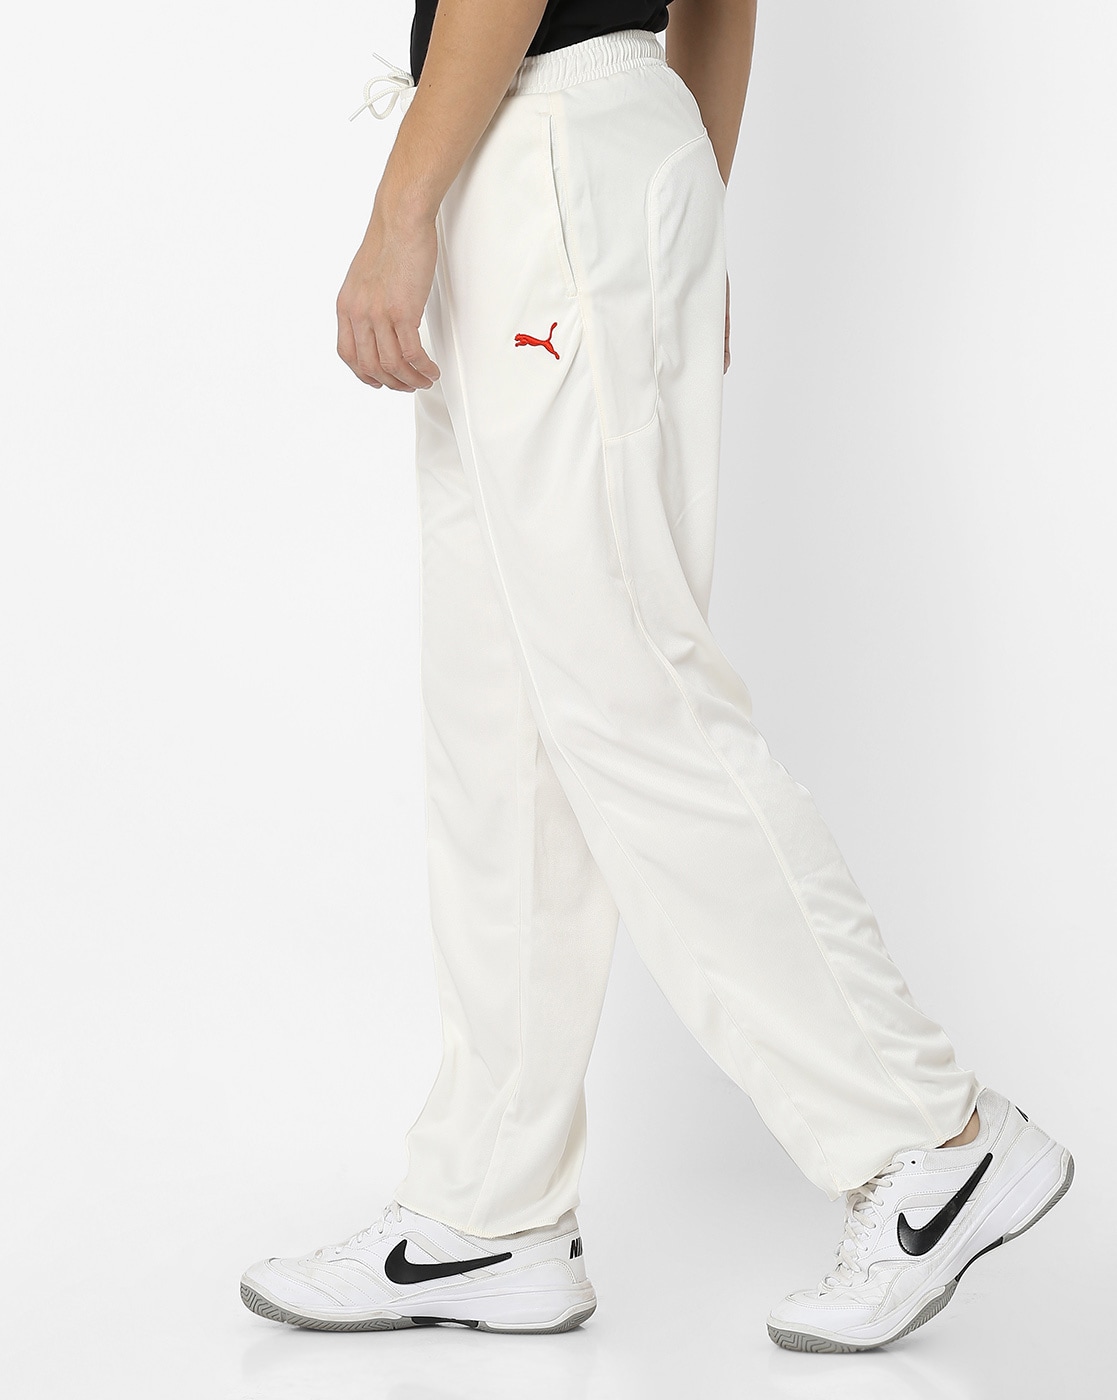 Premium Cricket Whites - Trouser | Anglar Originals